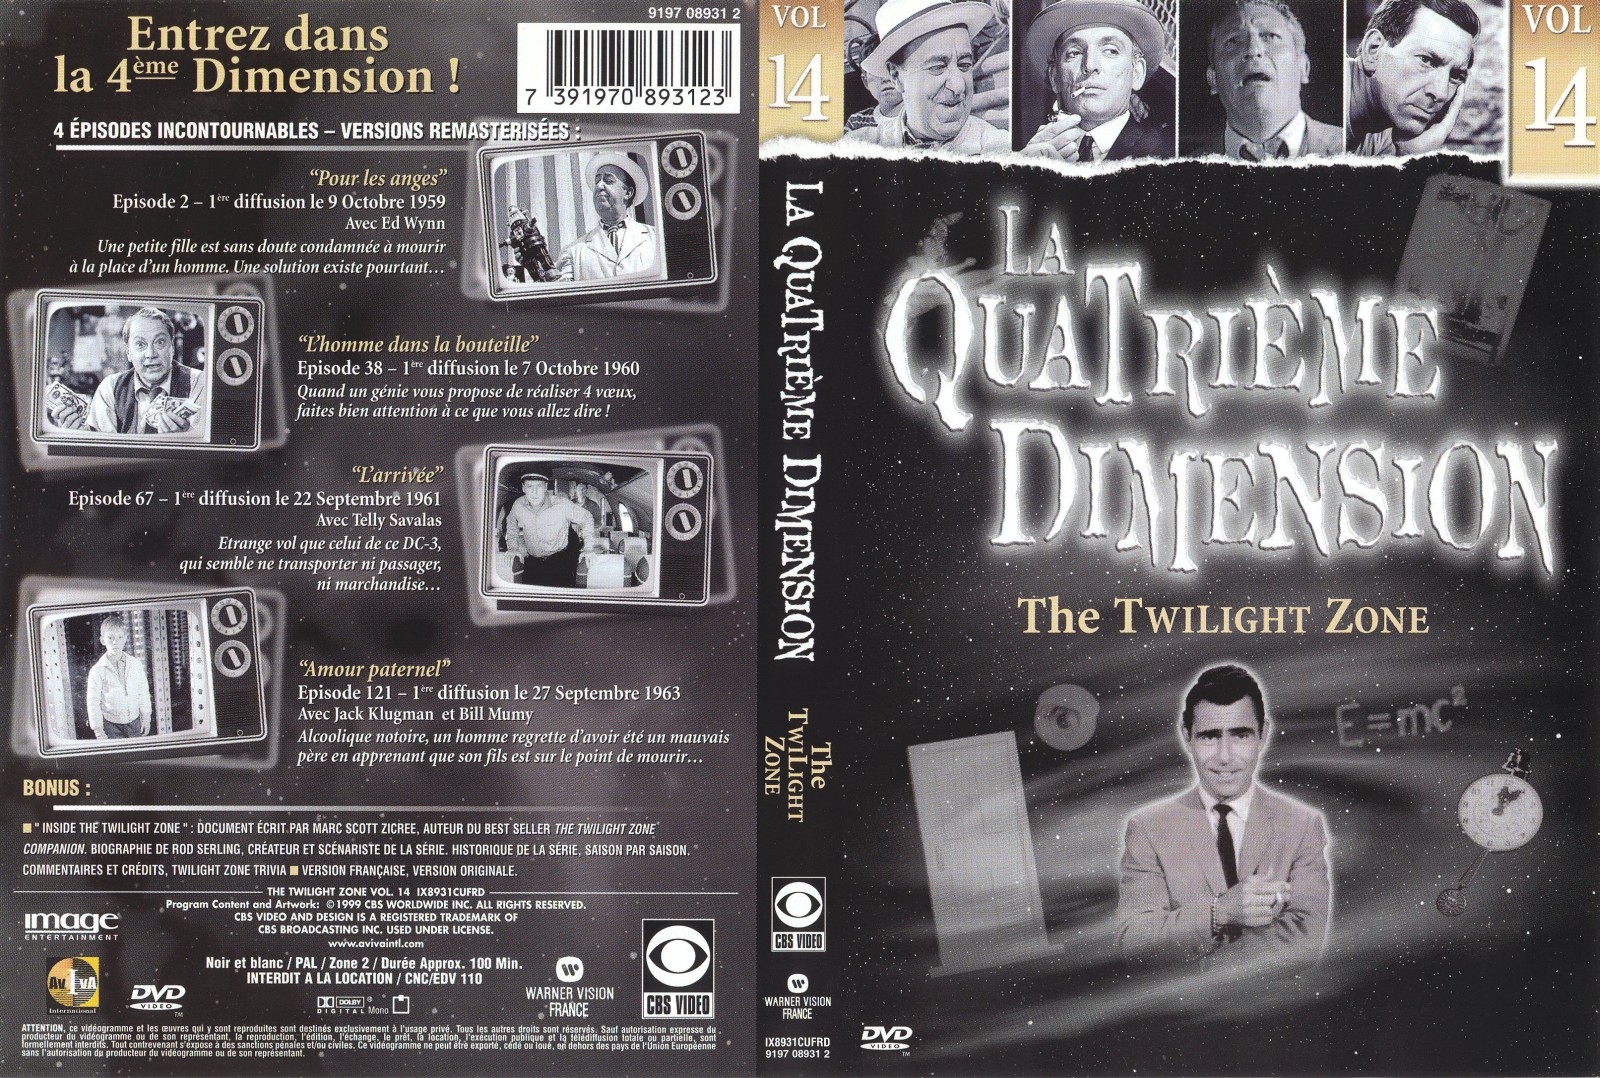 Jaquette DVD La quatrieme dimension vol 14